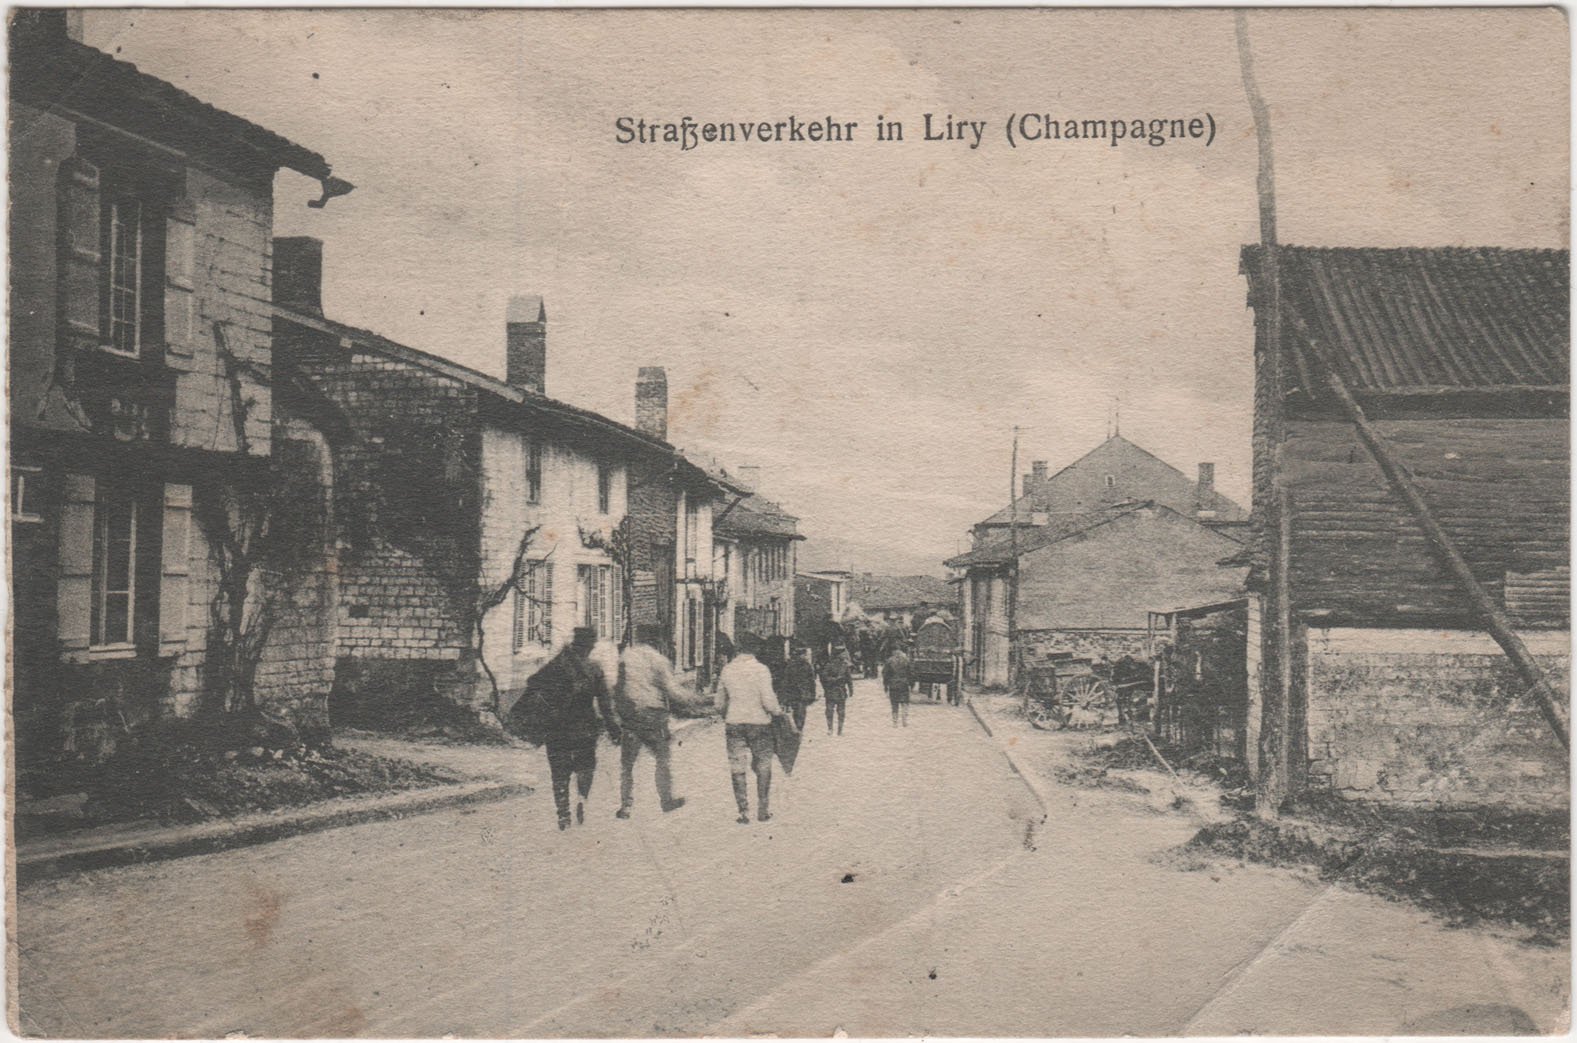 Feldpostkarte mit Straßenverkehr in Liry (Champagne) (Heimatarchiv Bad Bodendorf CC BY-NC-SA)